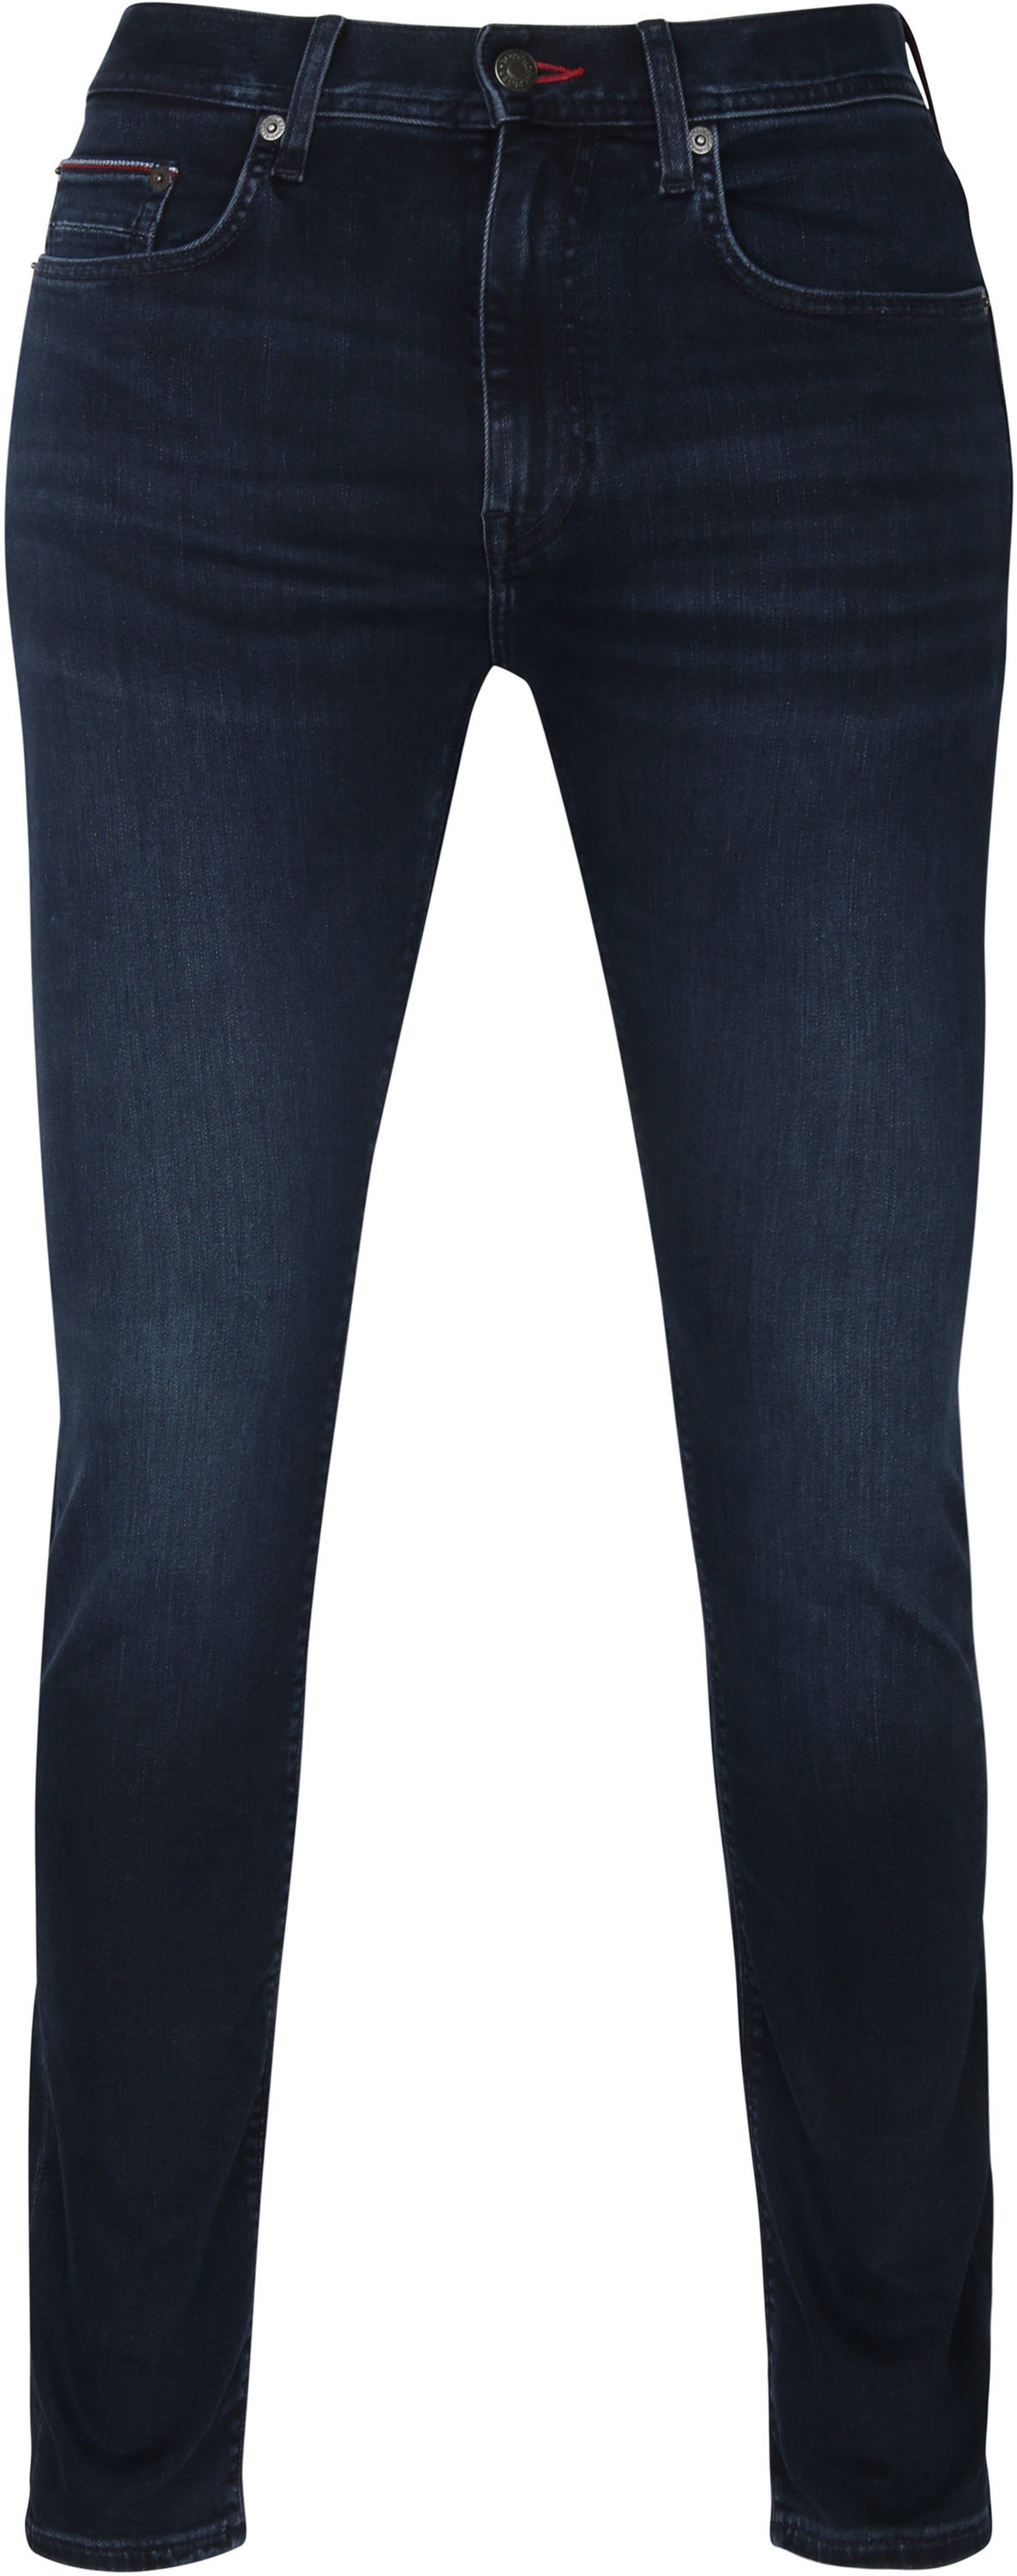 Tommy Hilfiger Jeans Slim Dark Dark Blue Blue size W 30